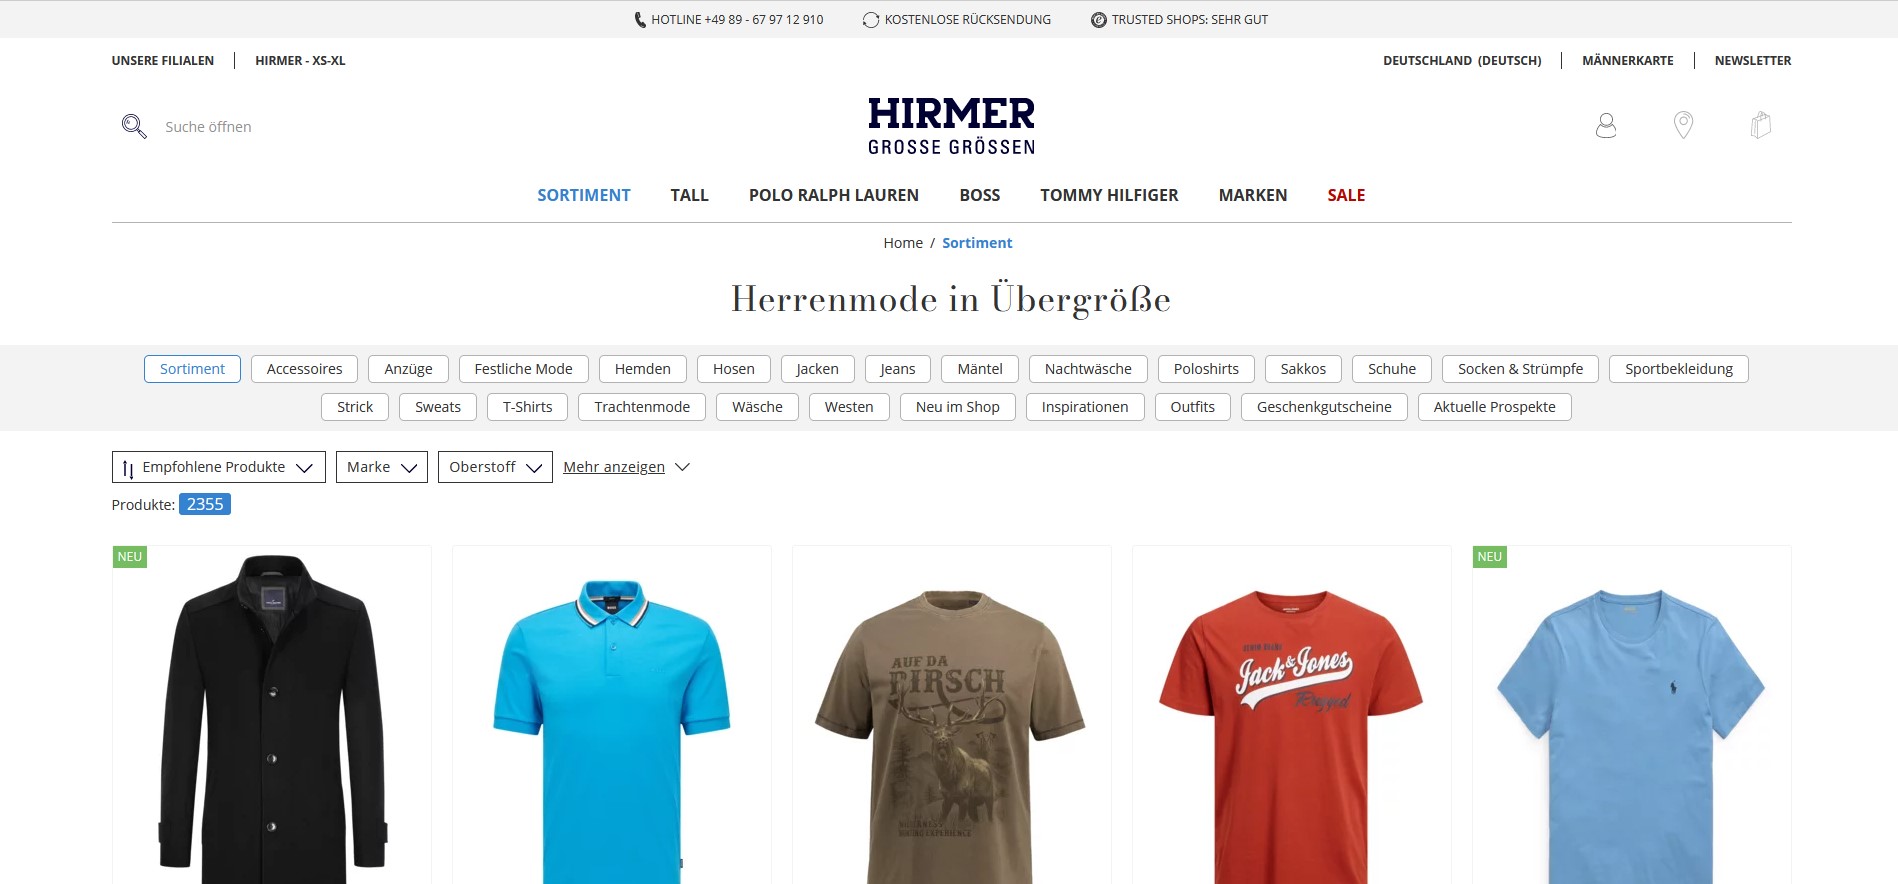 HIRMER GROSSE GRÖSSEN Online-Shop für große Größen